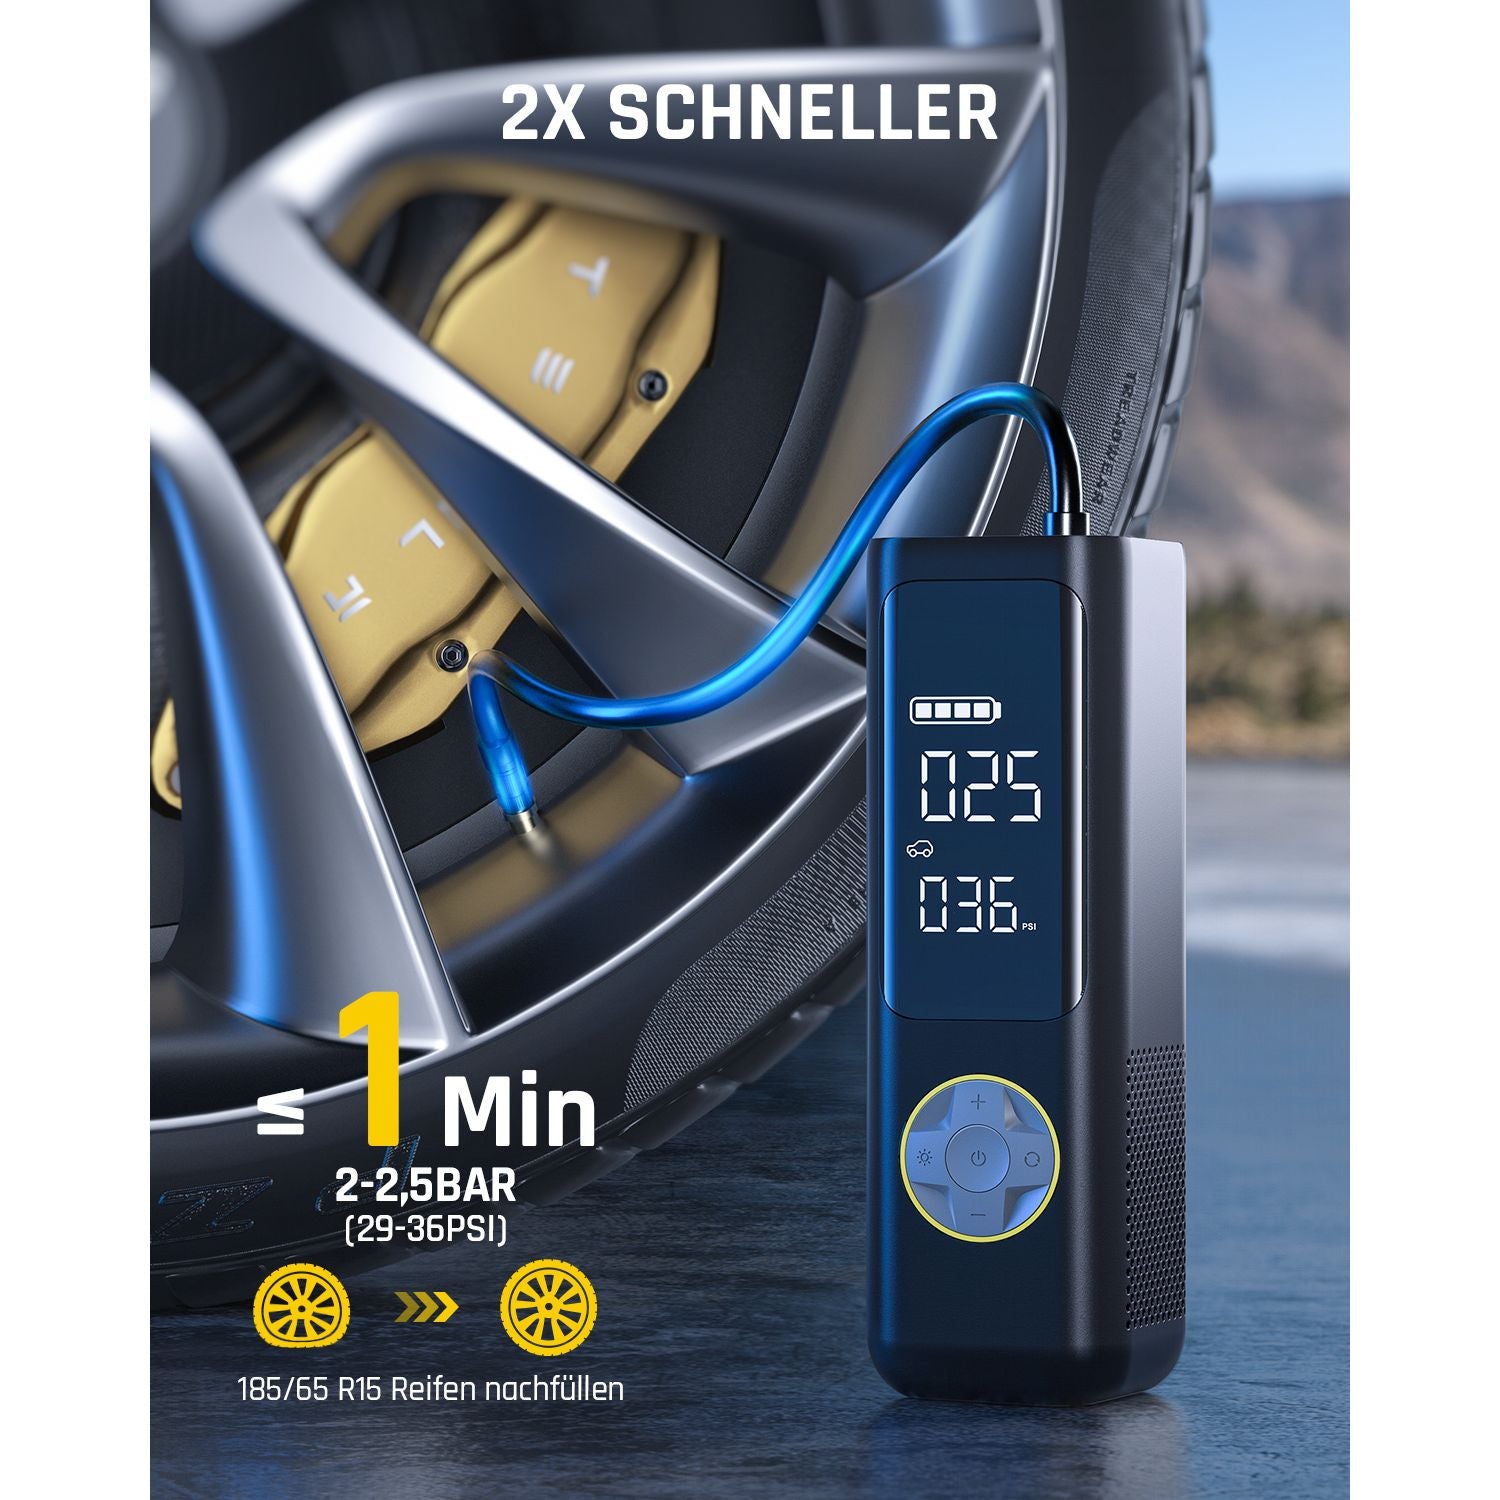 Fanttik X8 APEX™ 7800mAh Tragbare Elektronische Luftpumpe 12V, 10,3BAR / 150PSI Elektrischer Kompressor 2X Schneller, Dualer Bildschirm mit LCD, 5 Modi für Autos, E-Bikes, Motorräder, Bälle